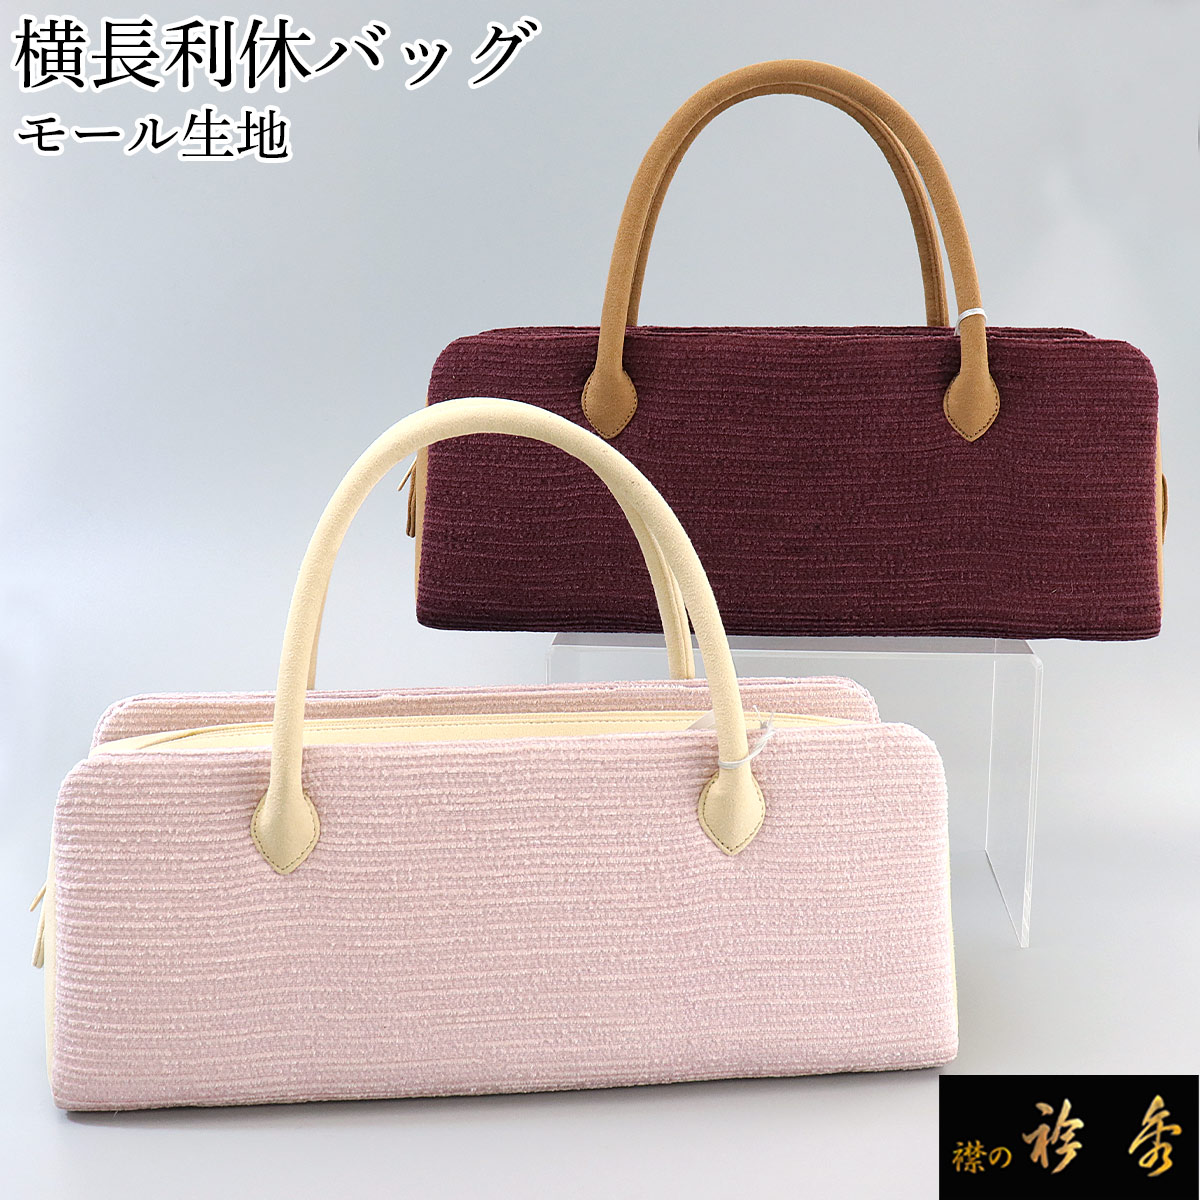 衿秀 公式 バッグ 和装 着物 ばっぐ bag 『利休』 横長 和装 日本製